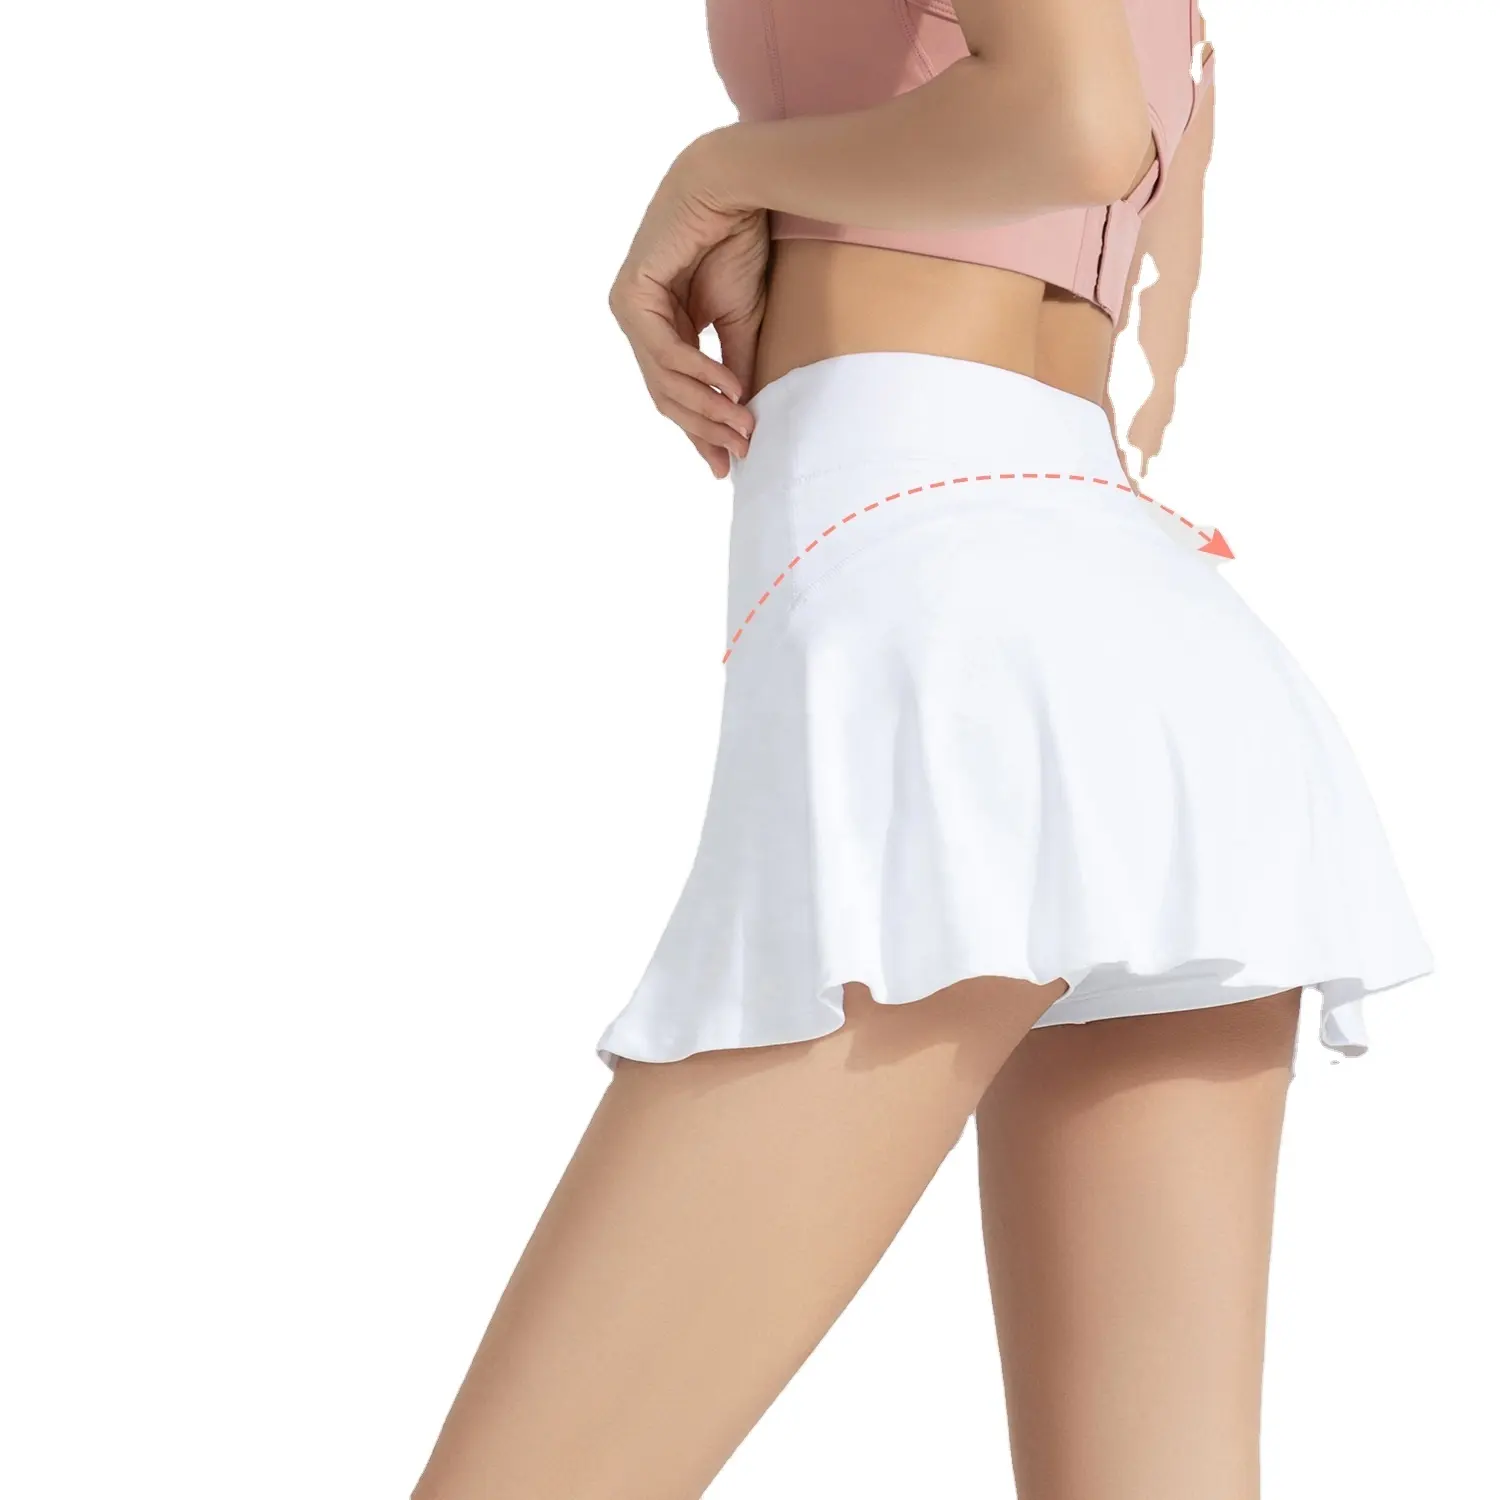 New Women Yoga Skirt with Lining Shorts Plain Colors Tennis Skirt Quick Dry Running Skirt Baseball Sports Girl Bottom Wear